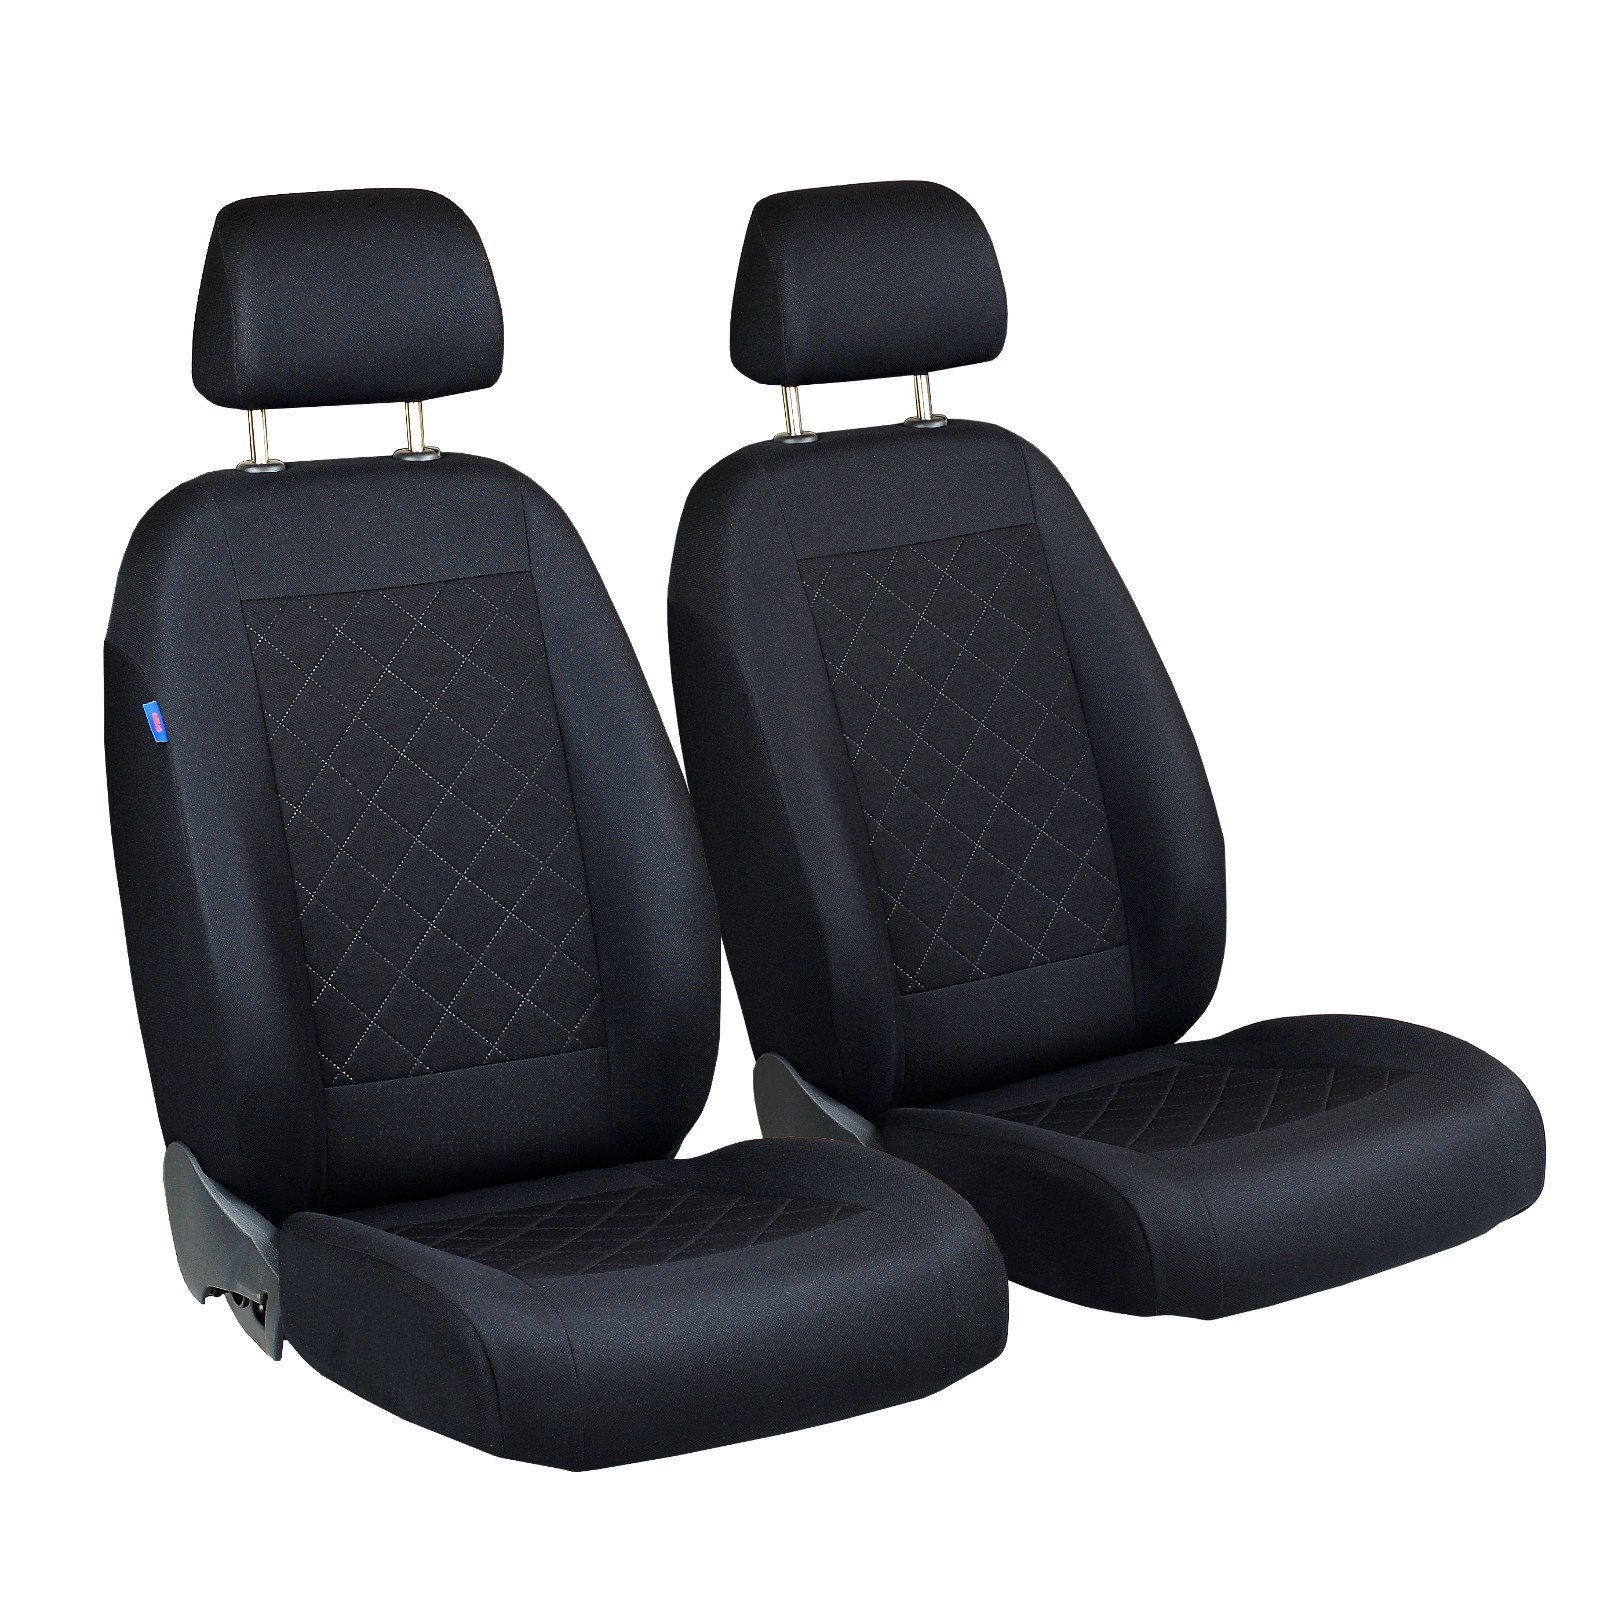 Getz Vorne Sitzbezüge - für Fahrer und Beifahrer - Farbe Premium Schwarz gepresstes Karomuster